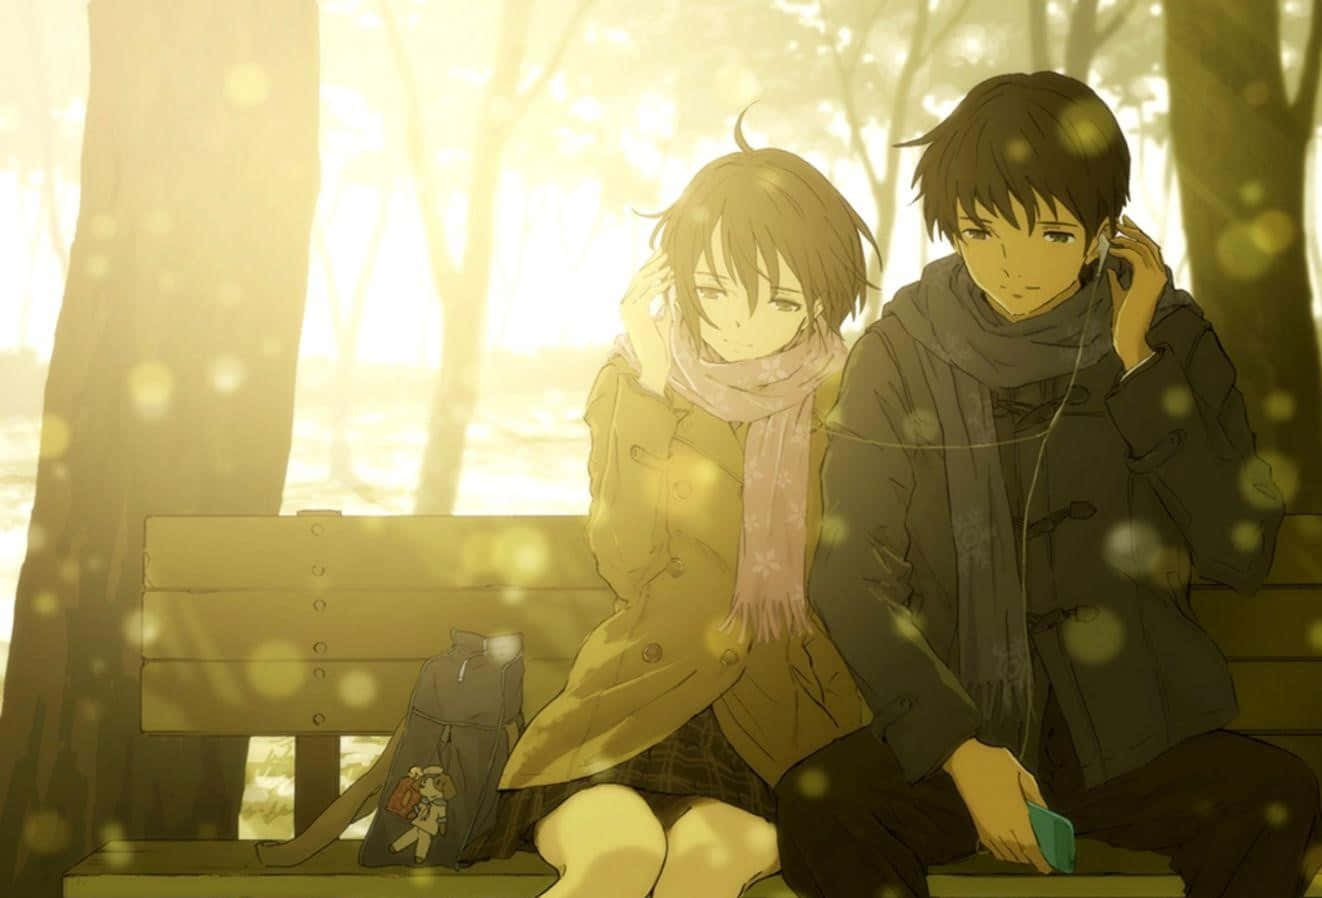 Etromantisk Øjeblik Mellem To Anime-elskere.